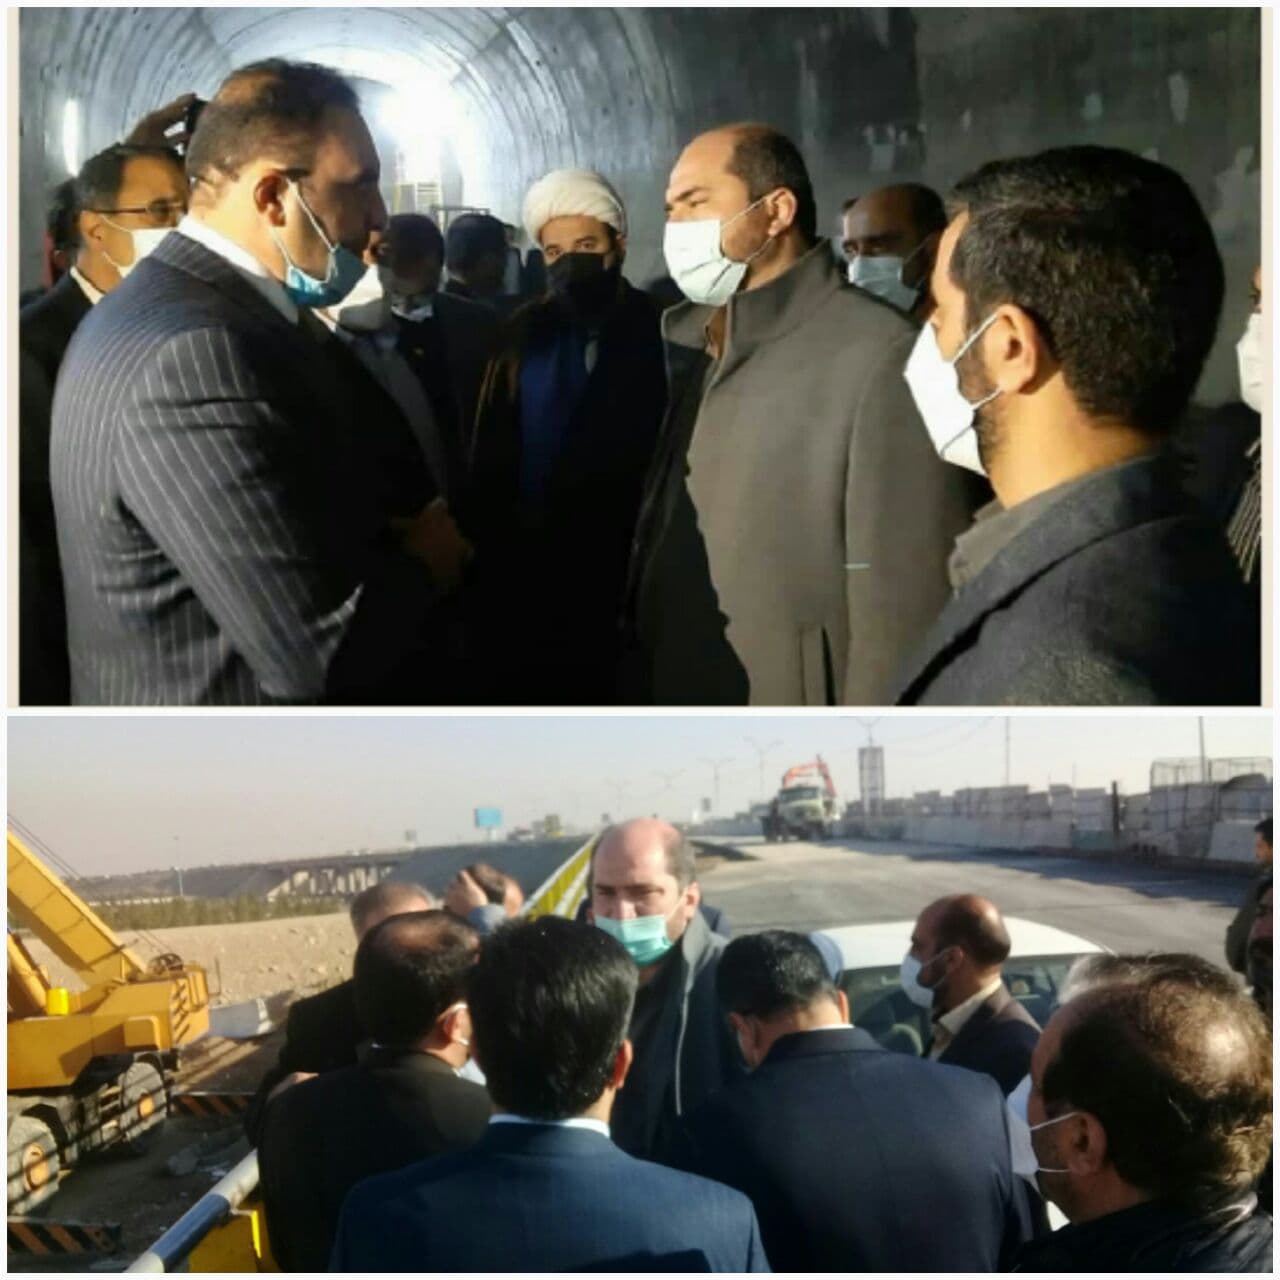 استاندار تهران: مترو اسلامشهر جزو پروژه های فاخر استان تهران است که مبدا و منشا تحولات مثبت در شهر اسلامشهر خواهد بود.